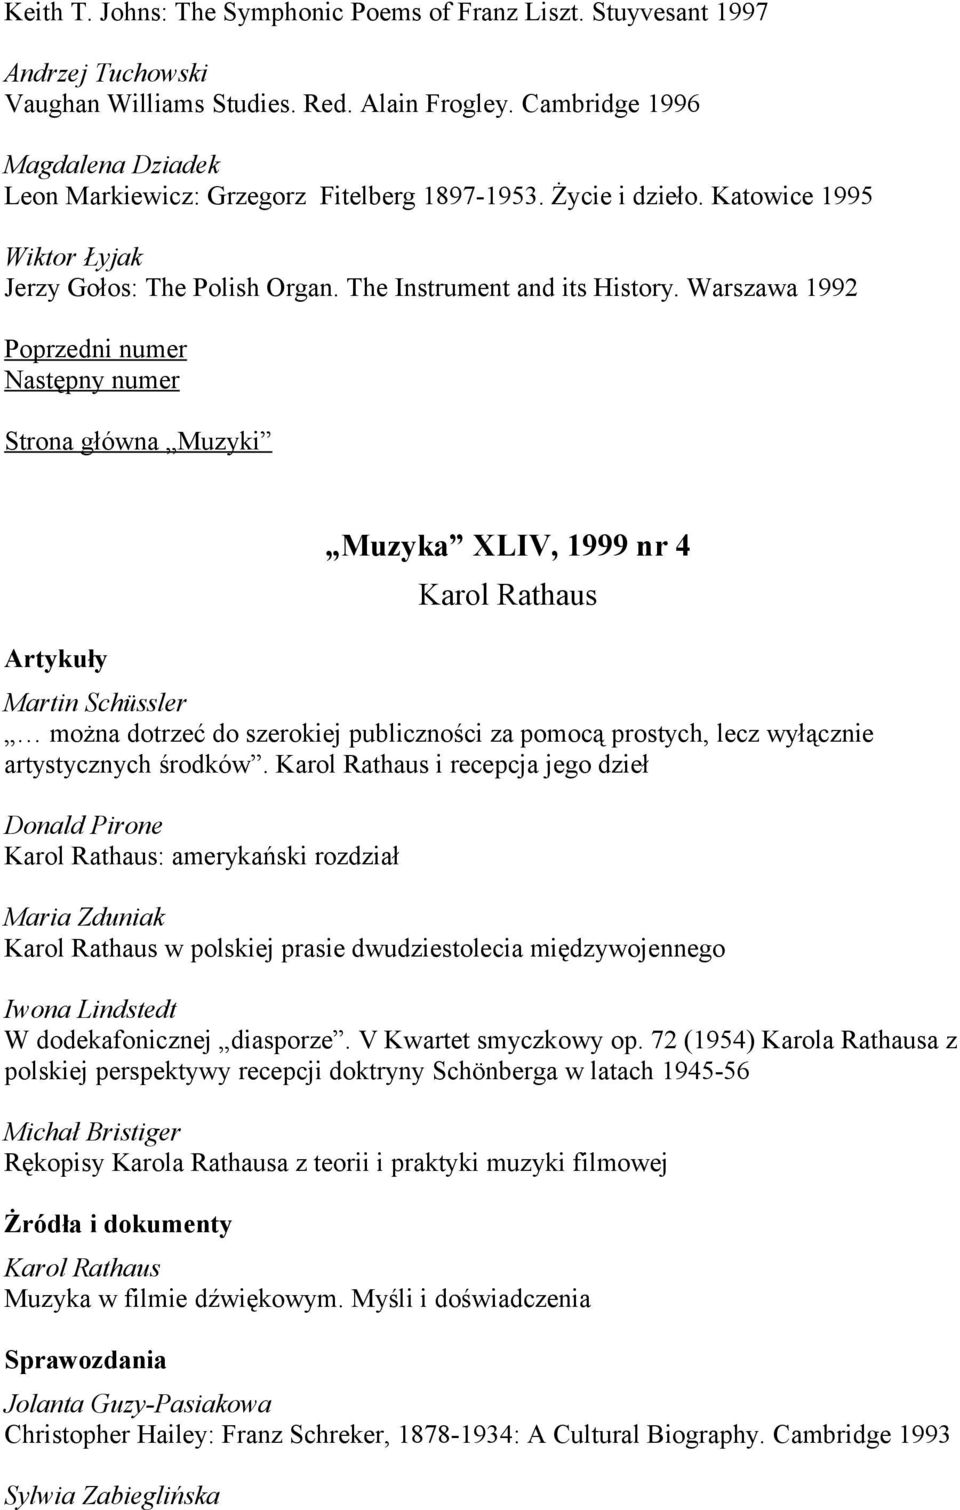 Warszawa 1992 Muzyka XLIV, 1999 nr 4 Karol Rathaus Martin Schüssler można dotrzeć do szerokiej publiczności za pomocą prostych, lecz wyłącznie artystycznych środków.